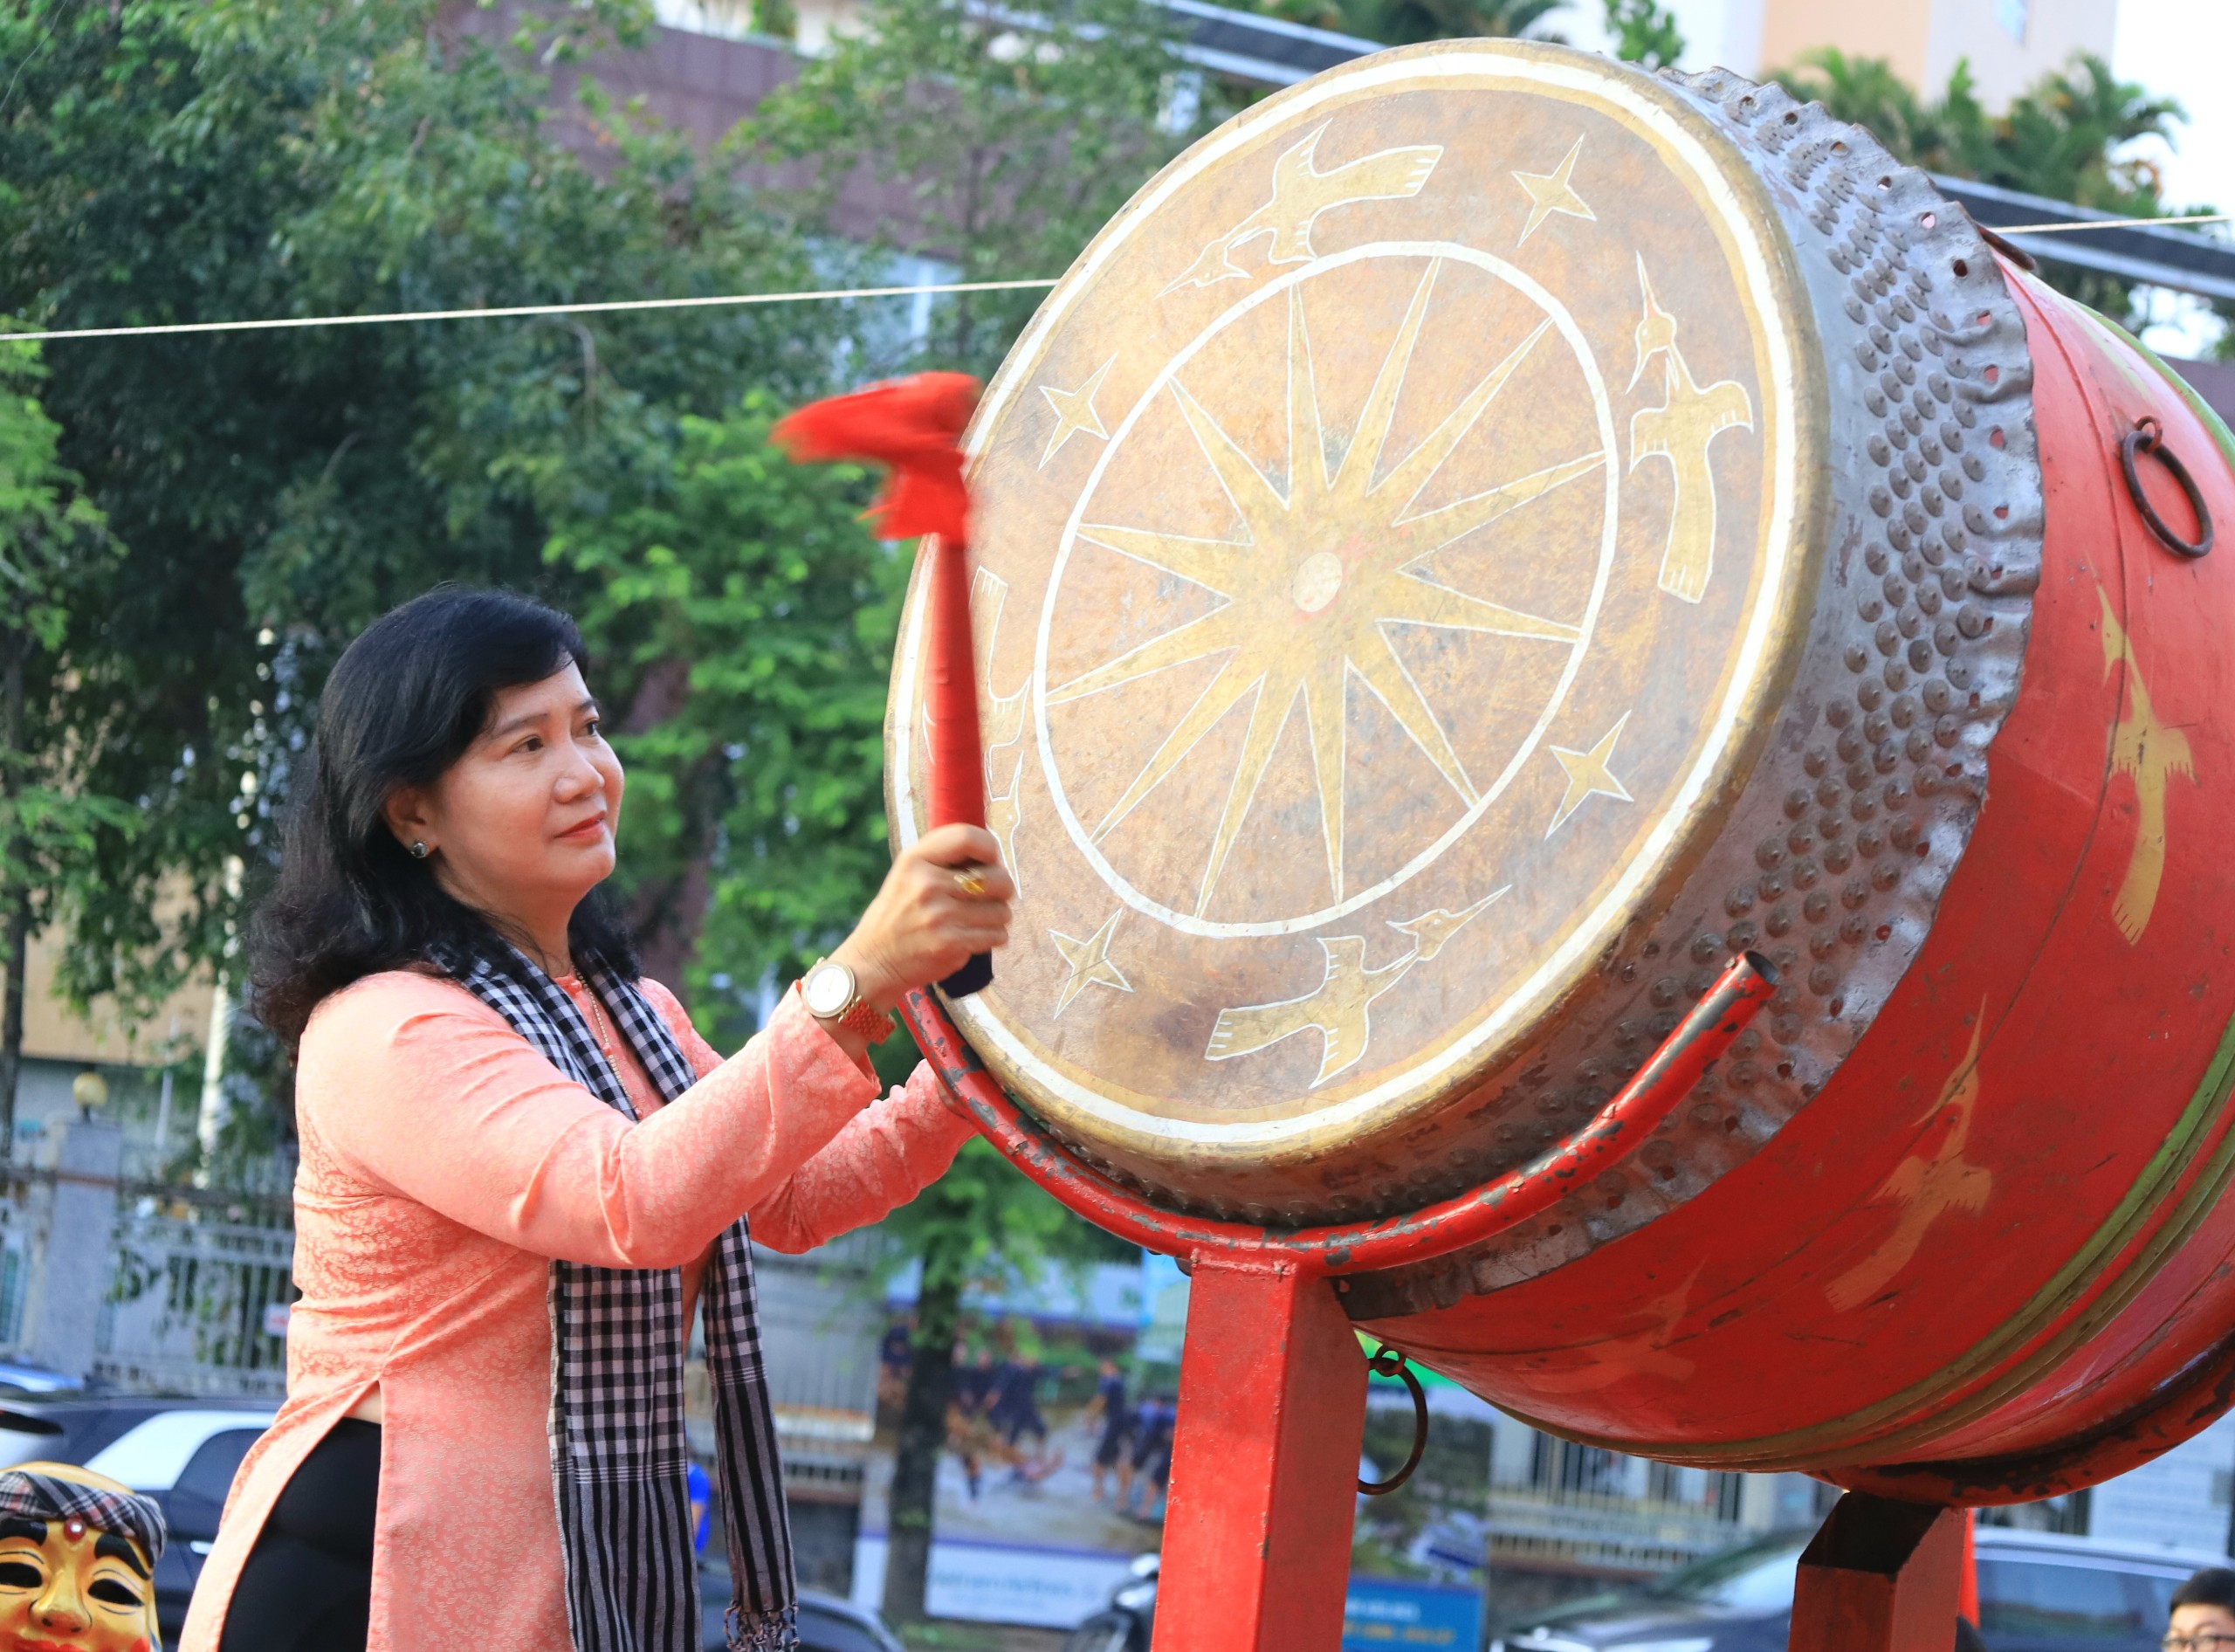 Bà Đào Thị Thanh Thúy - Phó Giám đốc Sở Văn hóa, Thể thao và Du lịch TP. Cần Thơ đánh trống xuất phát diễu hành và trưng bày xe điện.